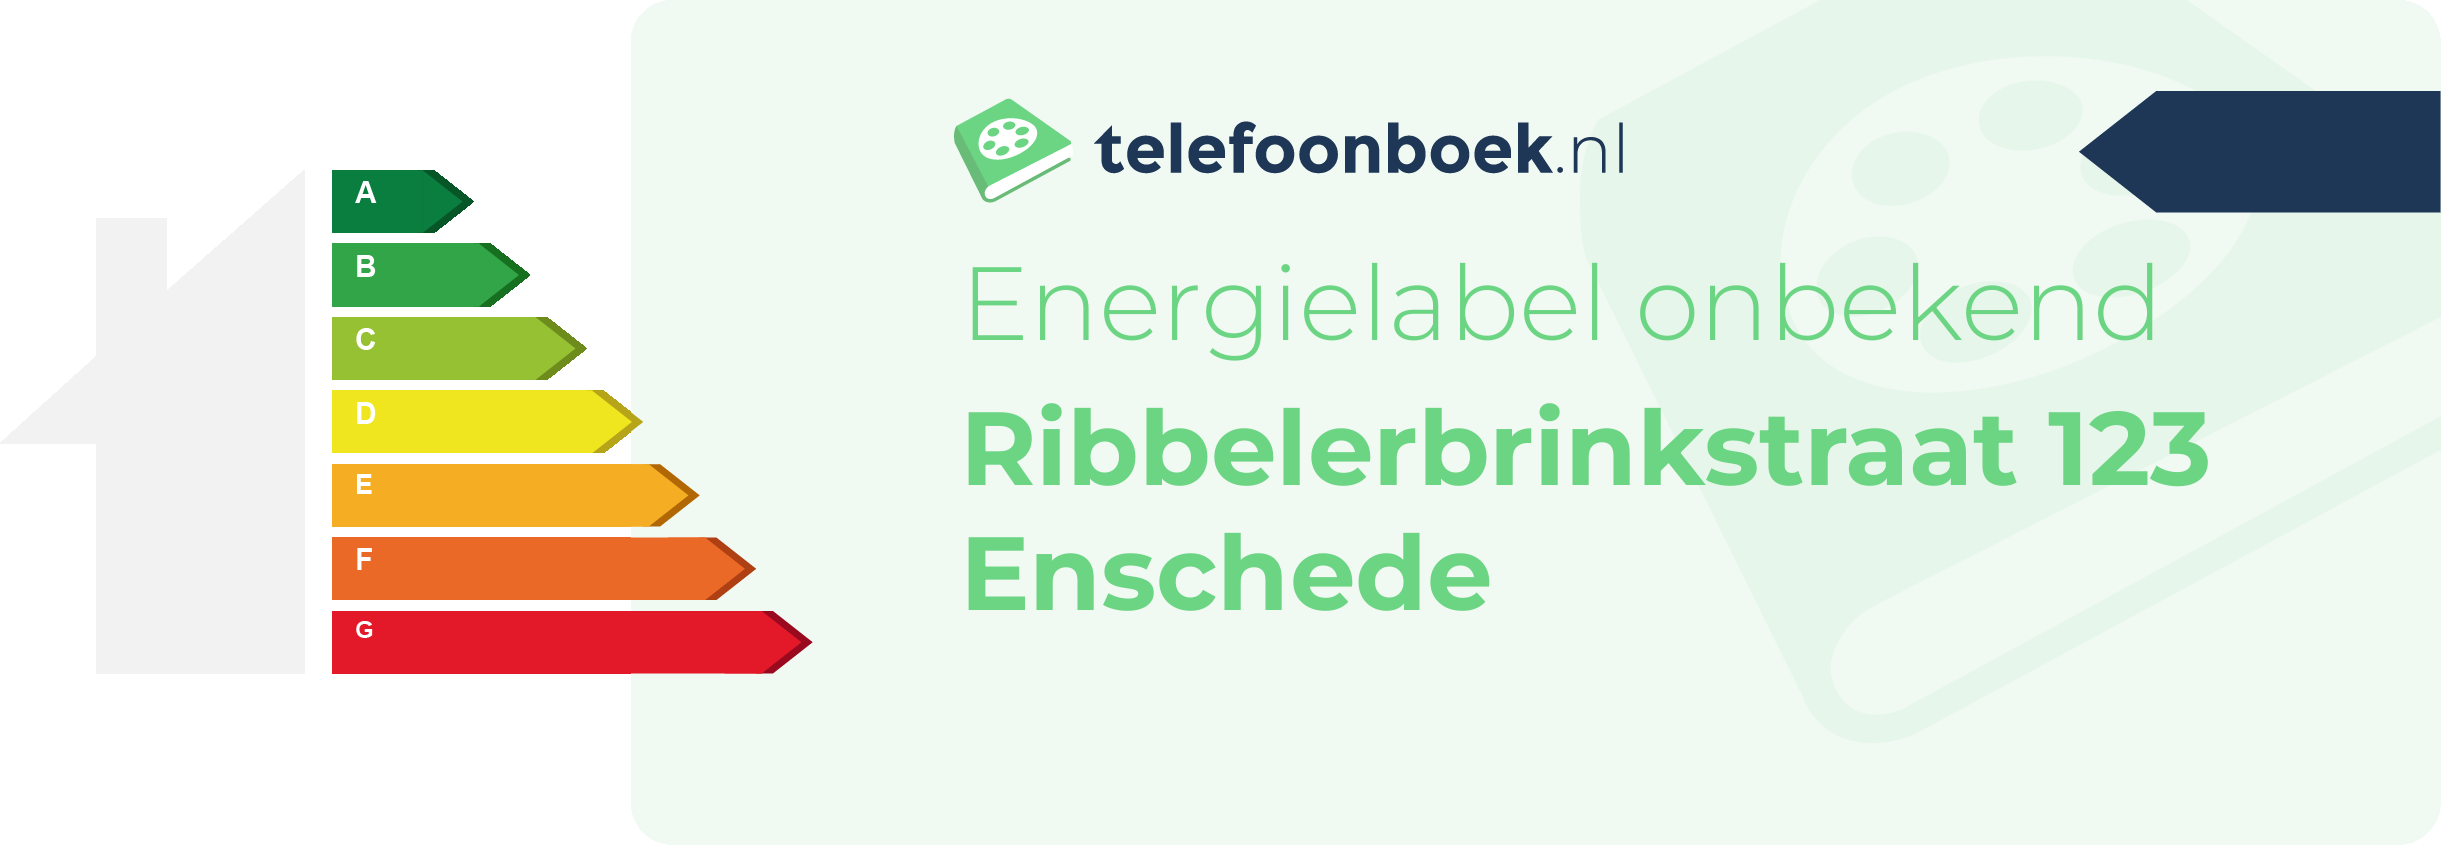 Energielabel Ribbelerbrinkstraat 123 Enschede